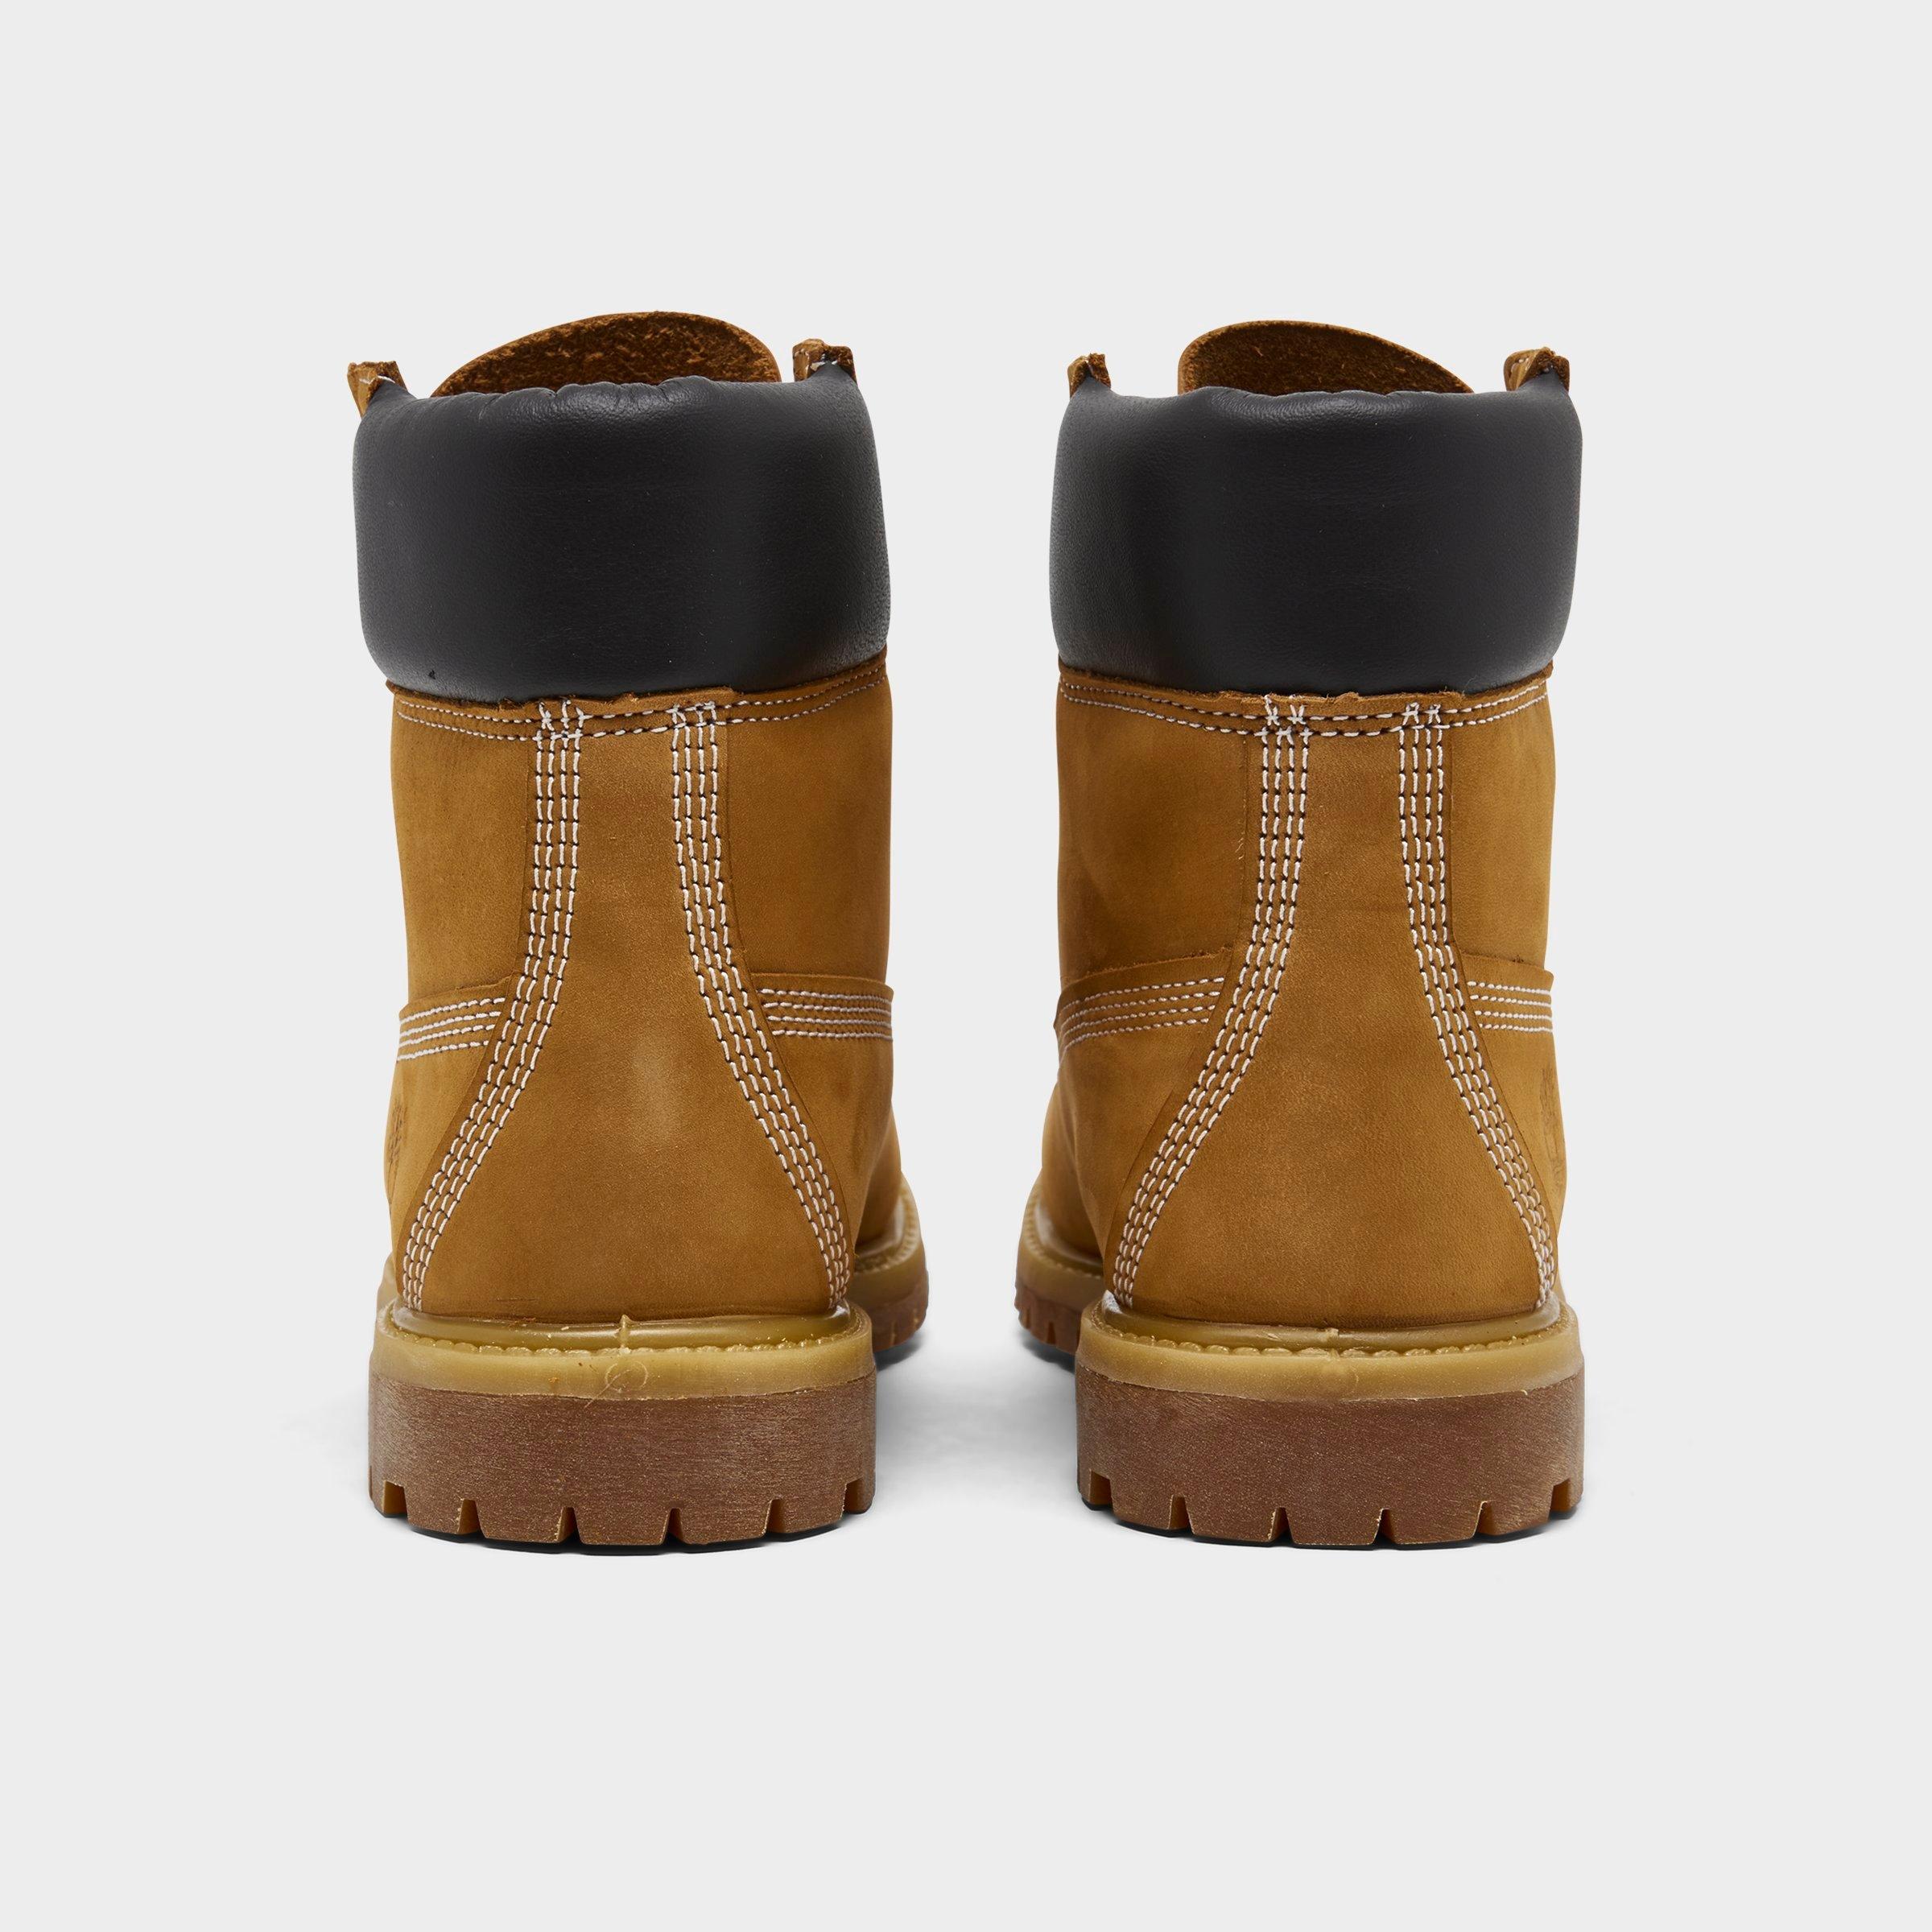 womens wide width waterproof boots